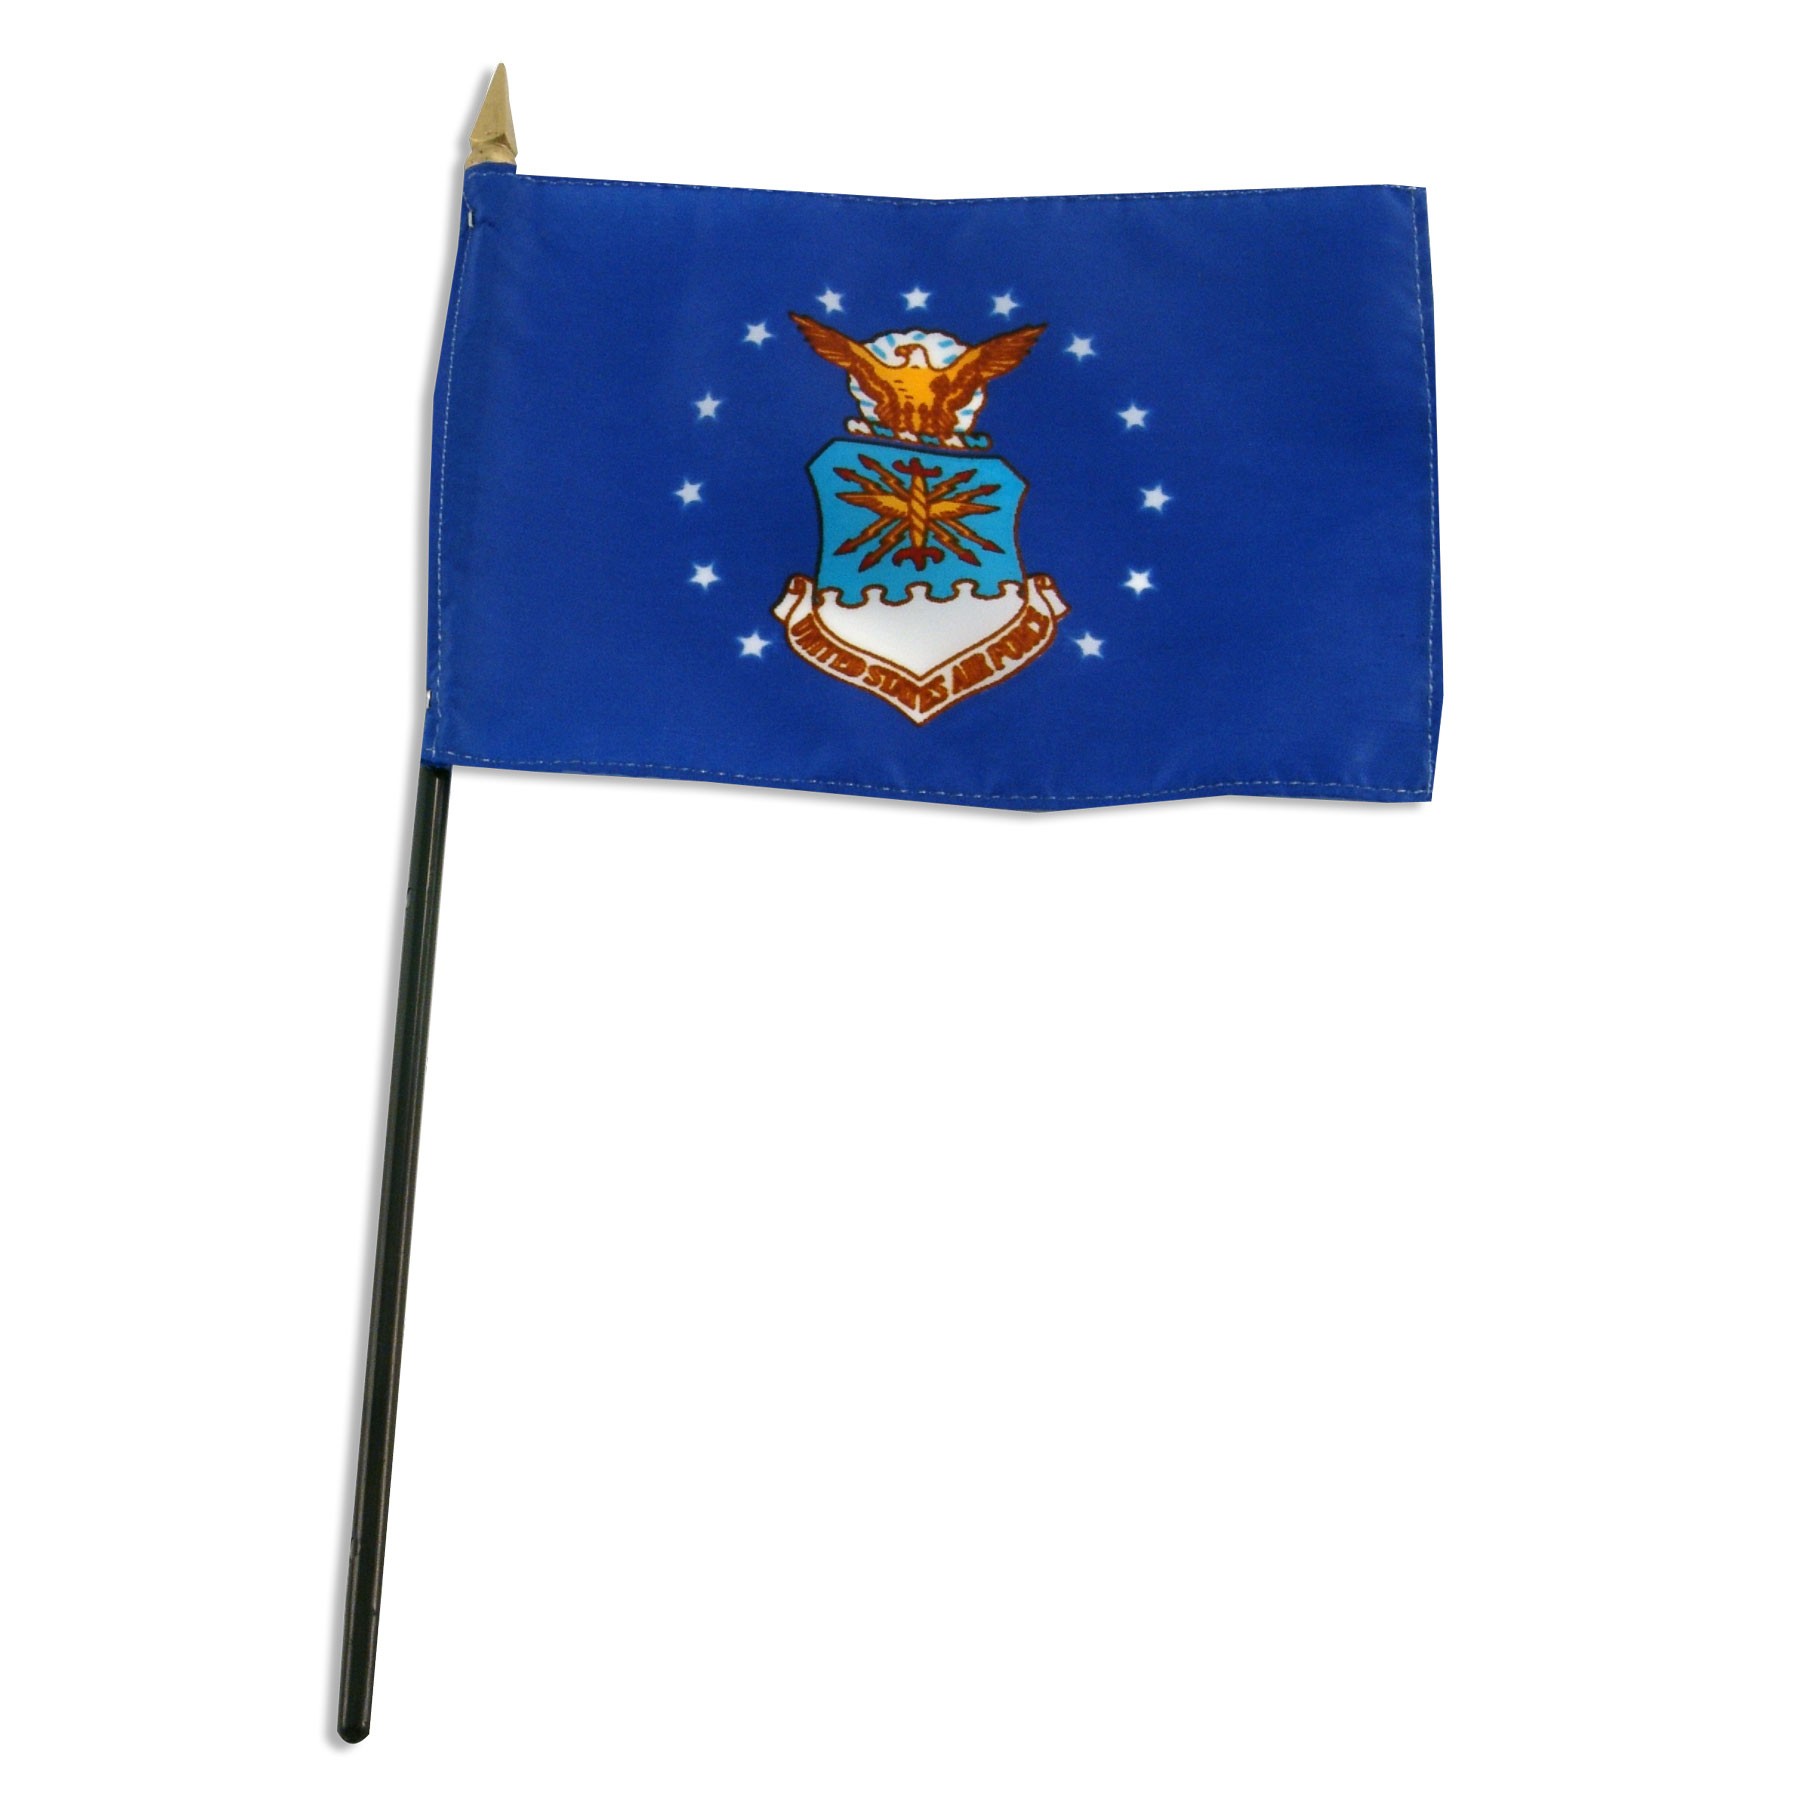 Air Force flag 4 x 6 inch